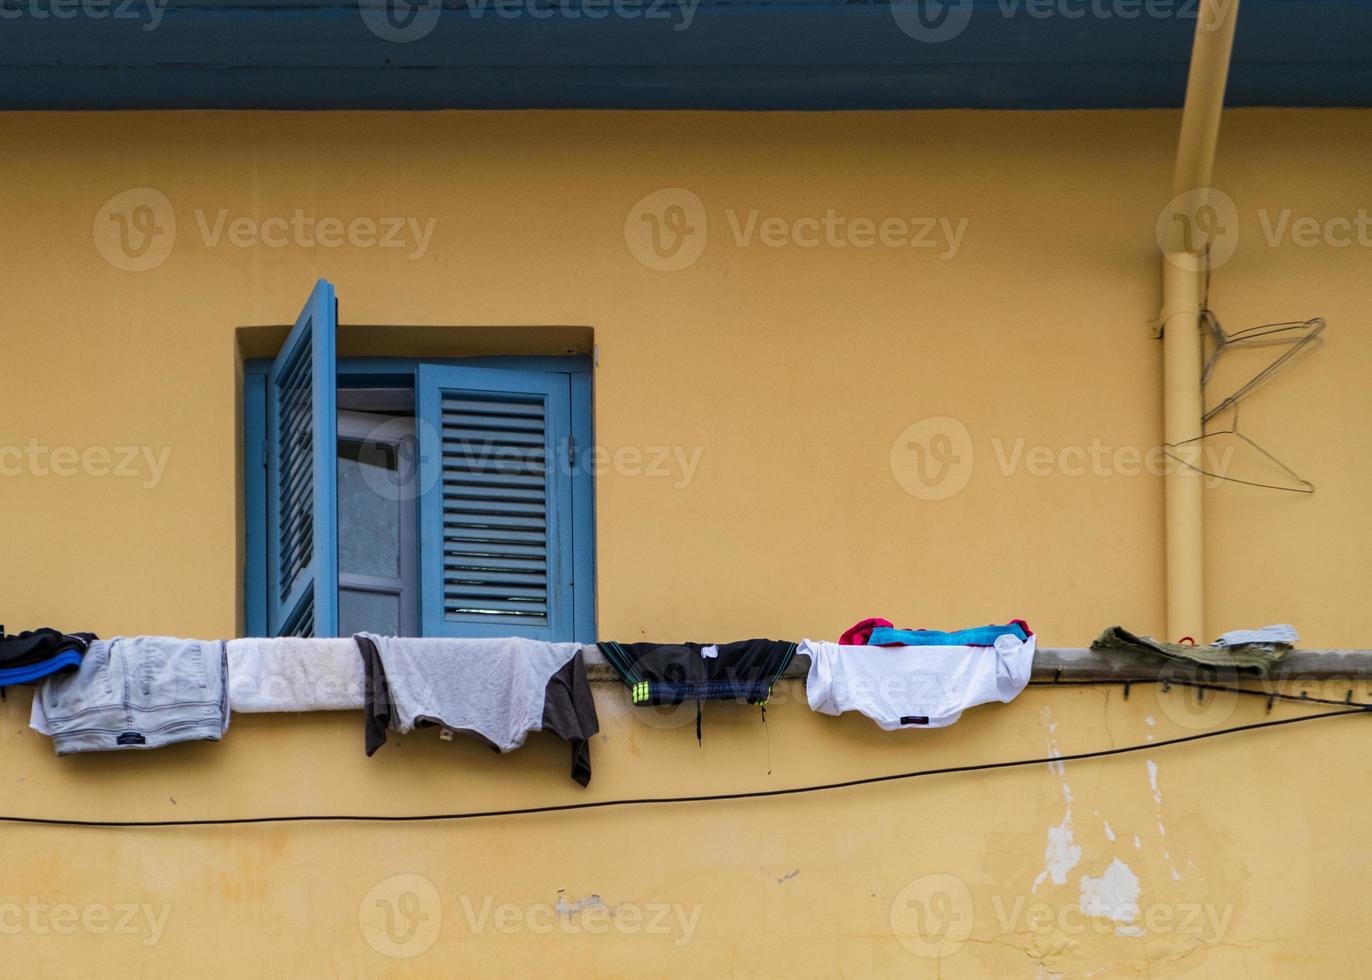 kläder som hänger på balkongen framför fönstret i ett traditionellt hus i gamla Nicosia, Cypern foto